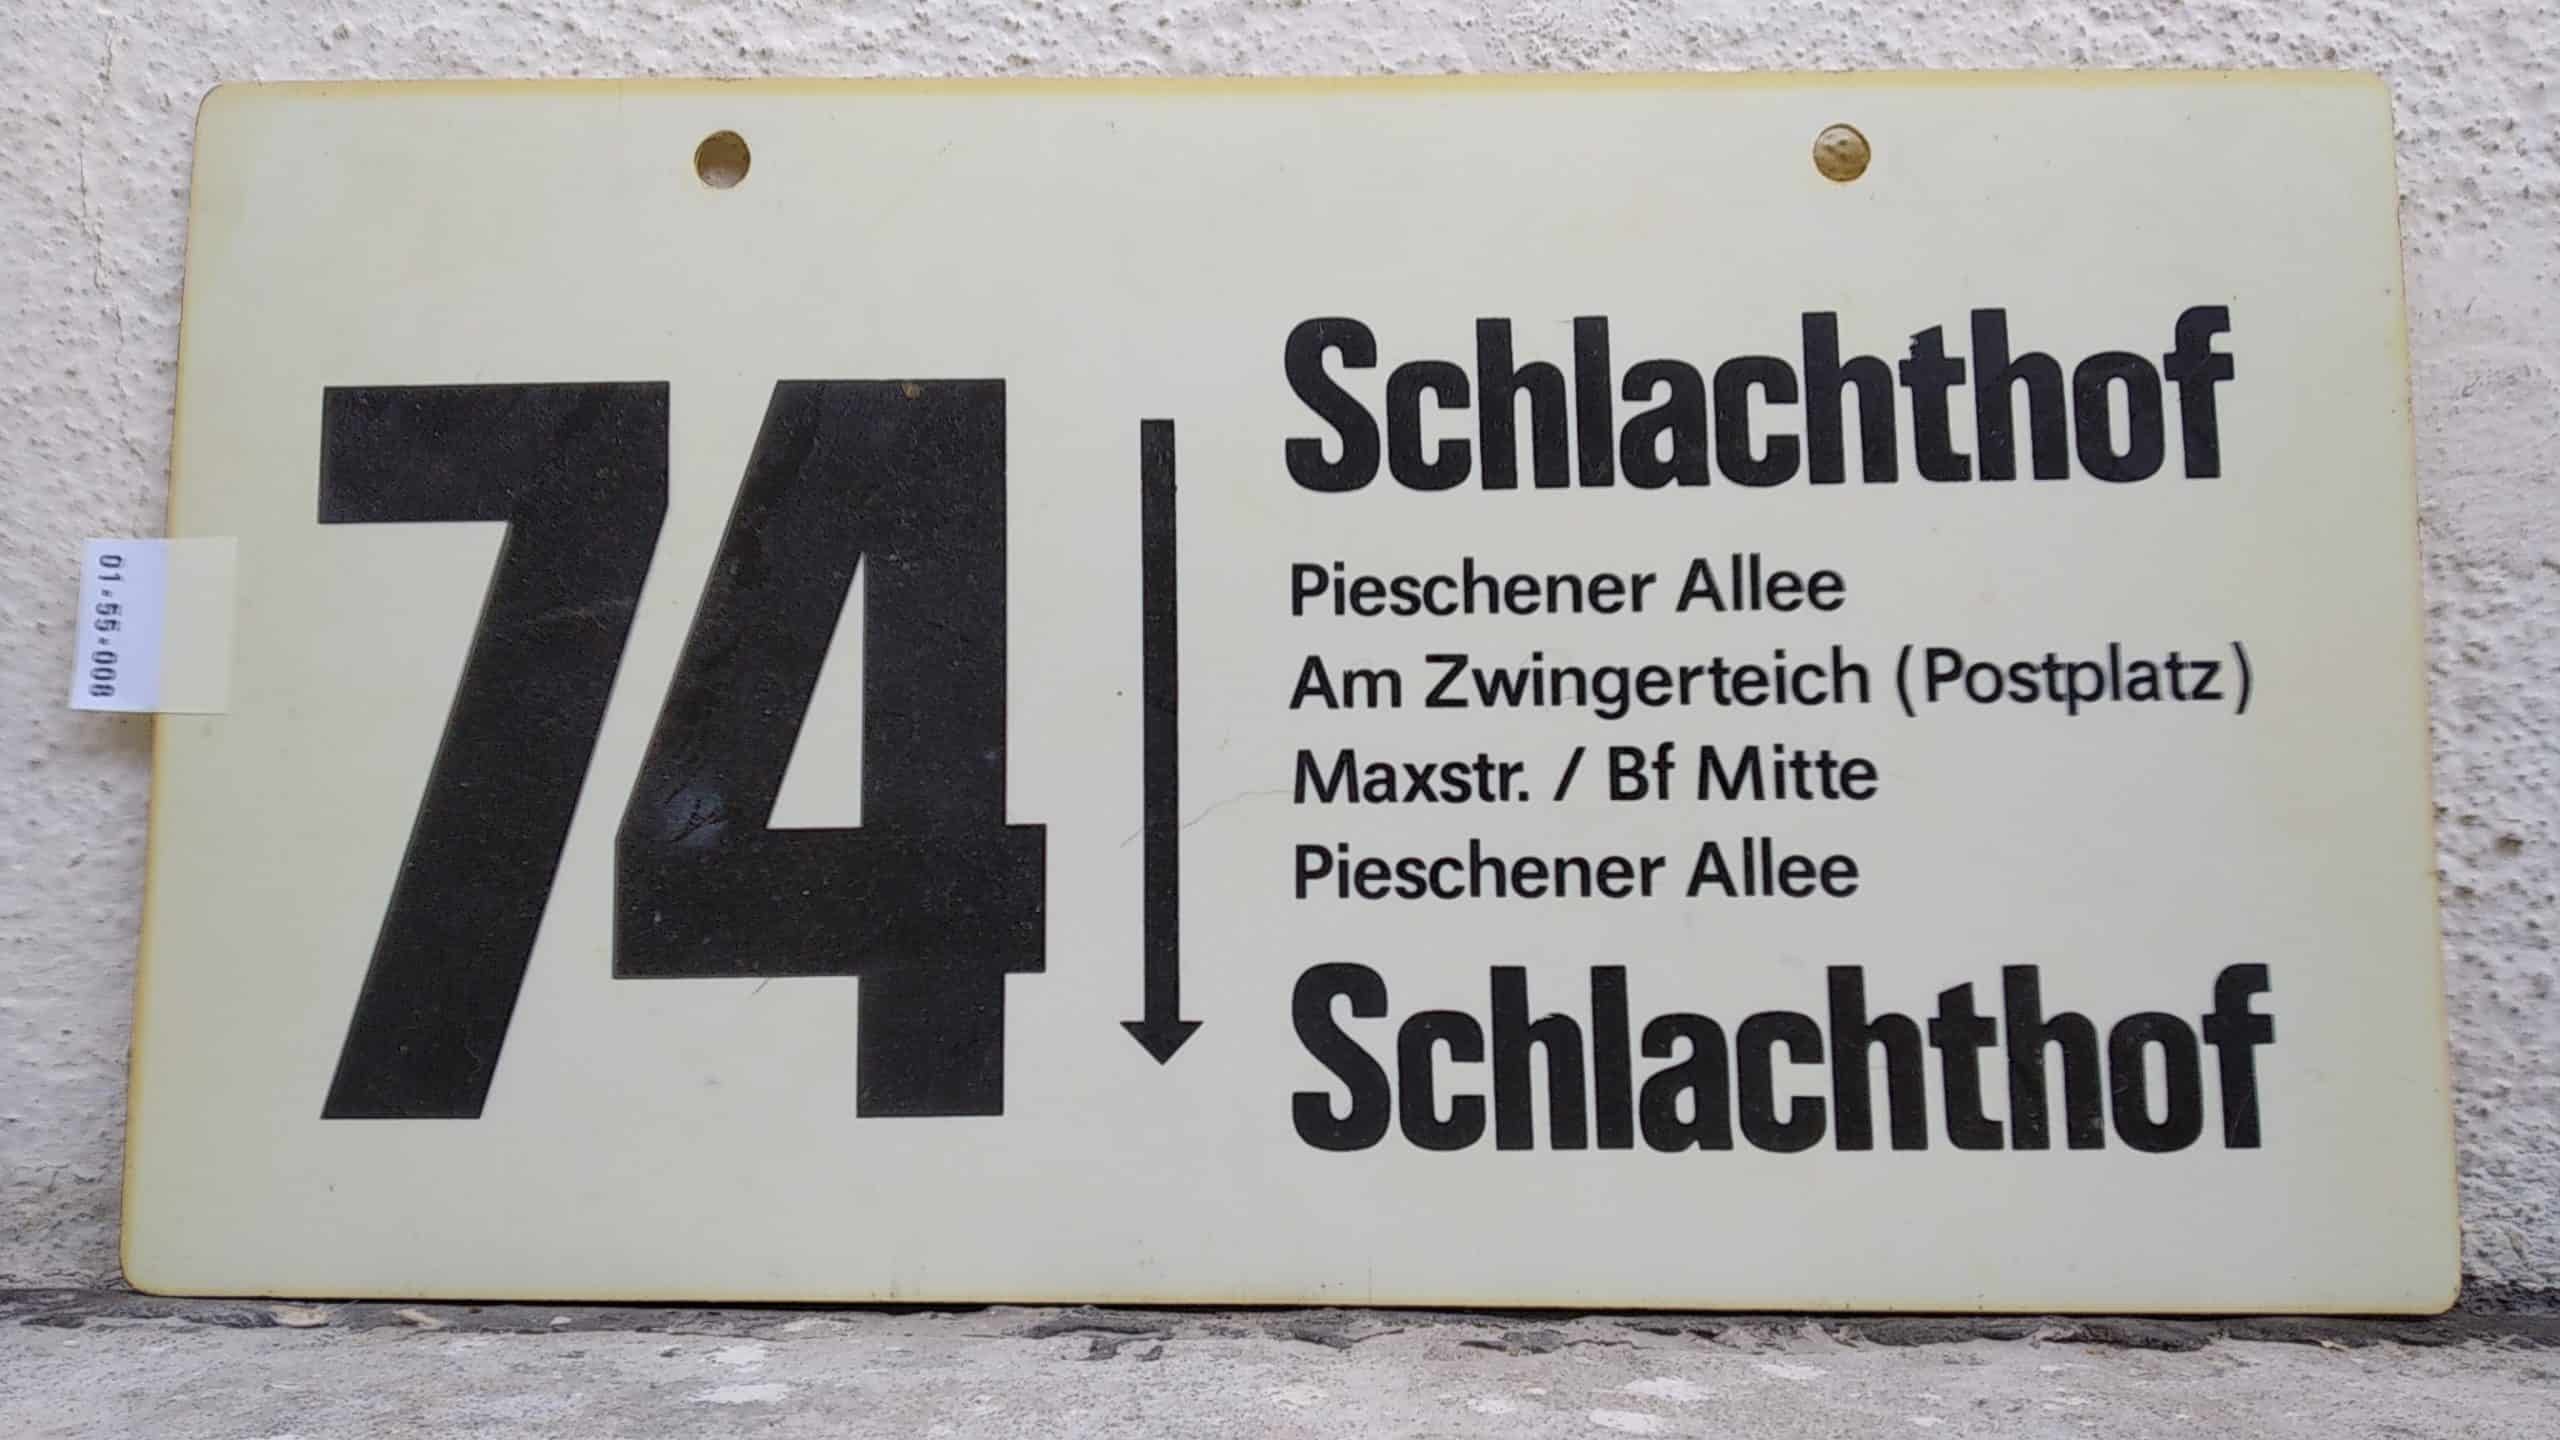 Ein seltenes Bus-Linienschild aus Dresden der Linie 74 von Schlachthof nach Schlachthof